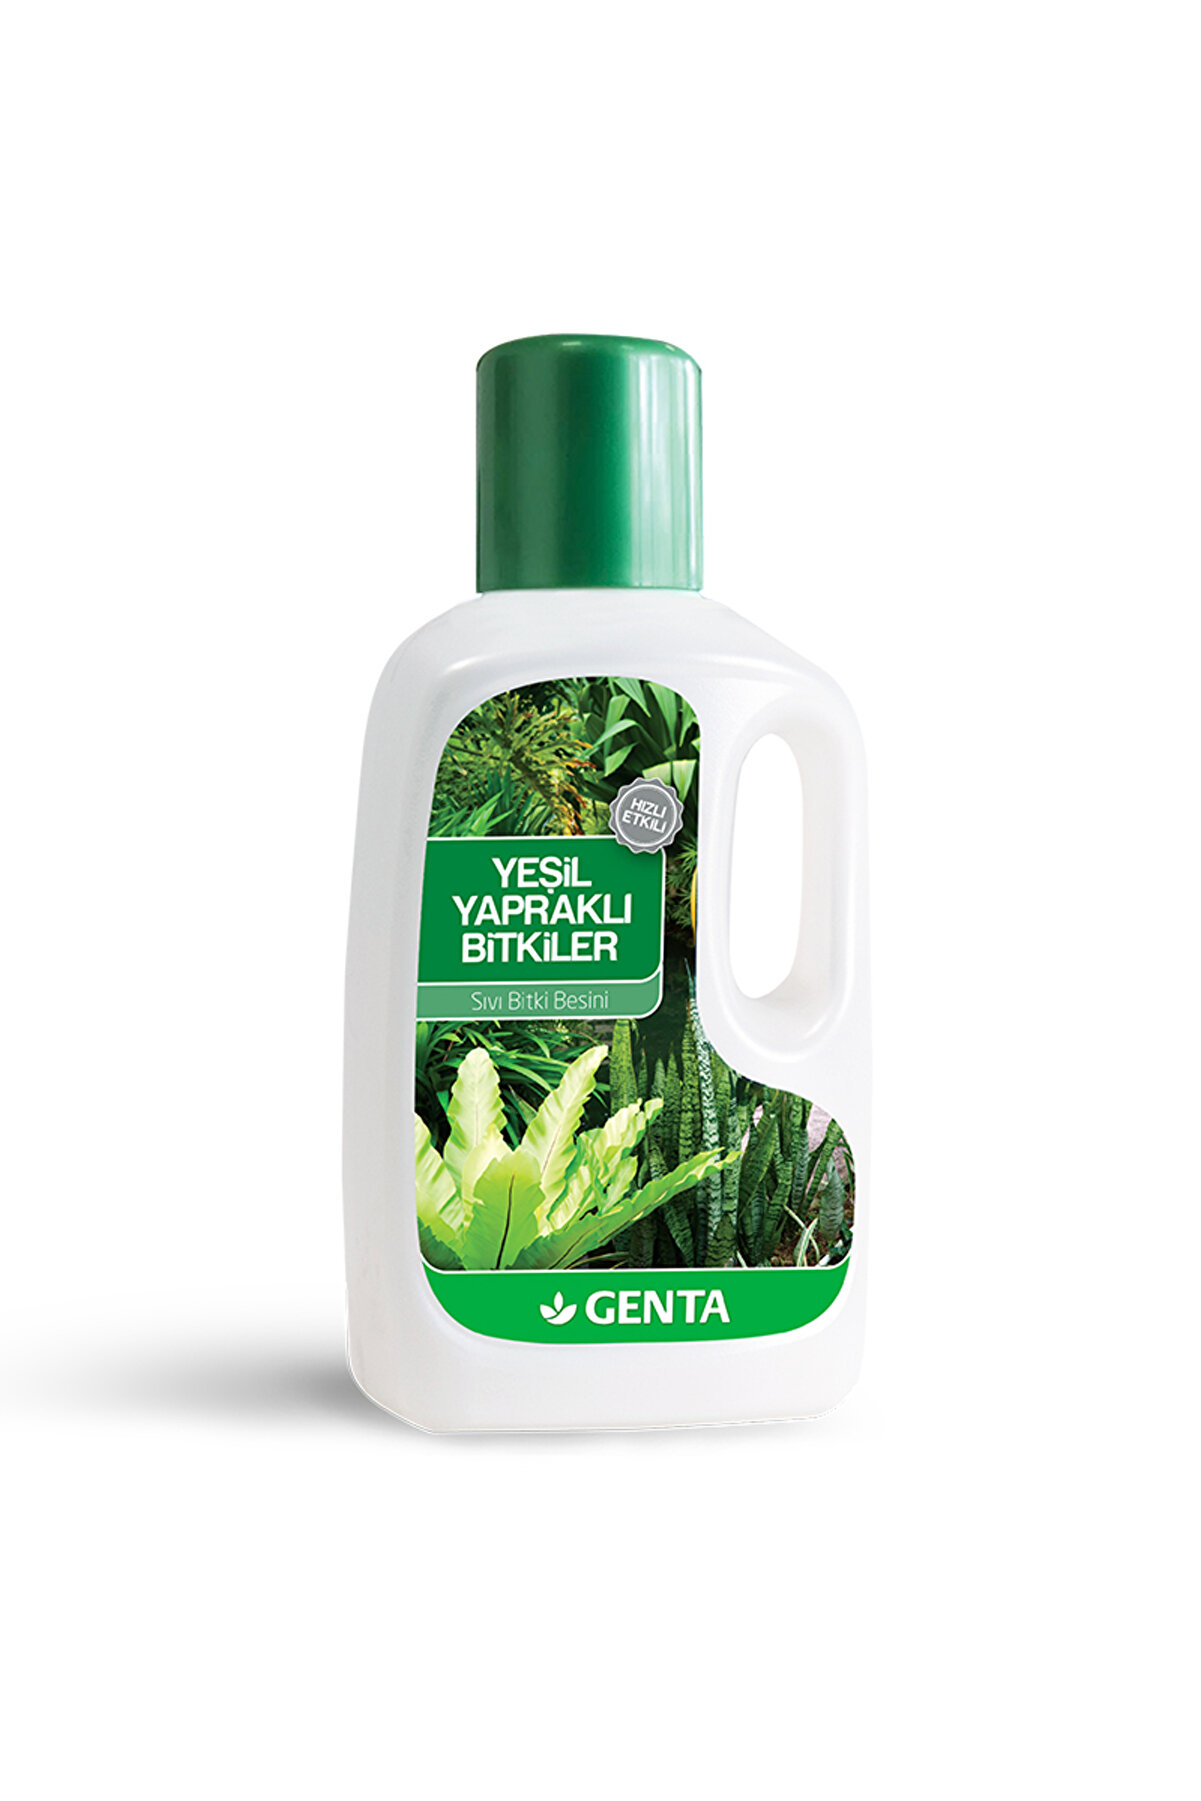 Genta Yeşil Yapraklı Bitkiler Için Sıvı Besin 500 ml